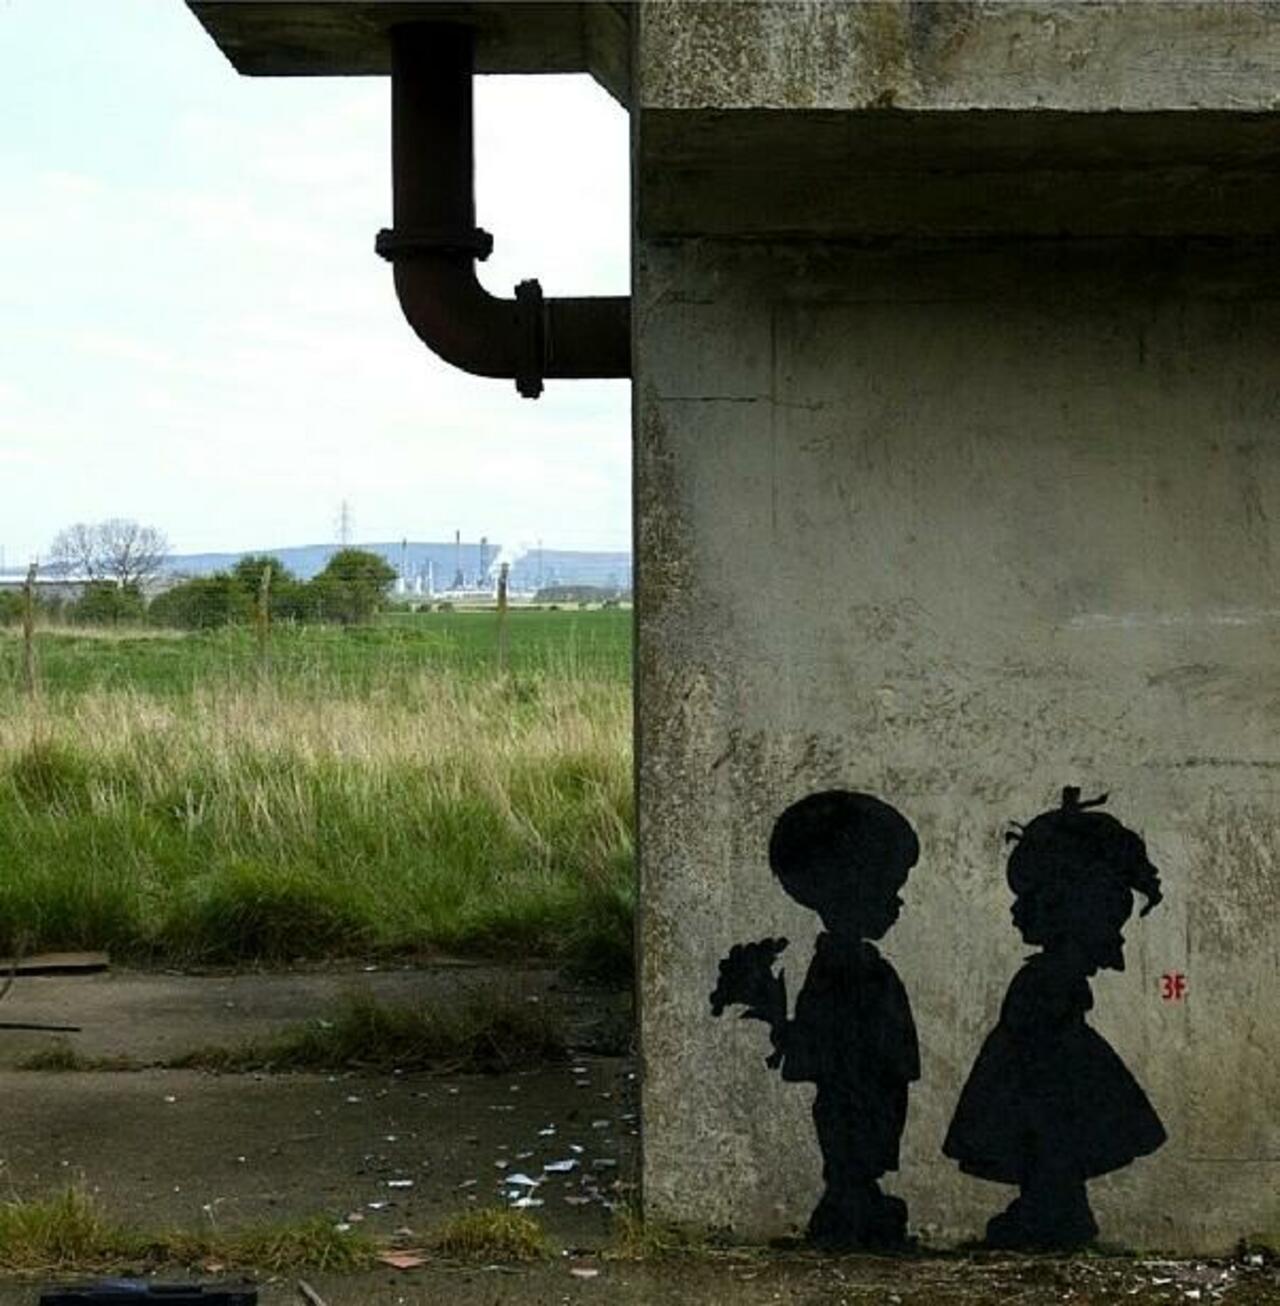 RT @GoogleStreetArt Found love in a hopeless place!

Street Art by 3fountains 

#art #mural #graffiti #streetart http://t.co/ZQgemlFjda